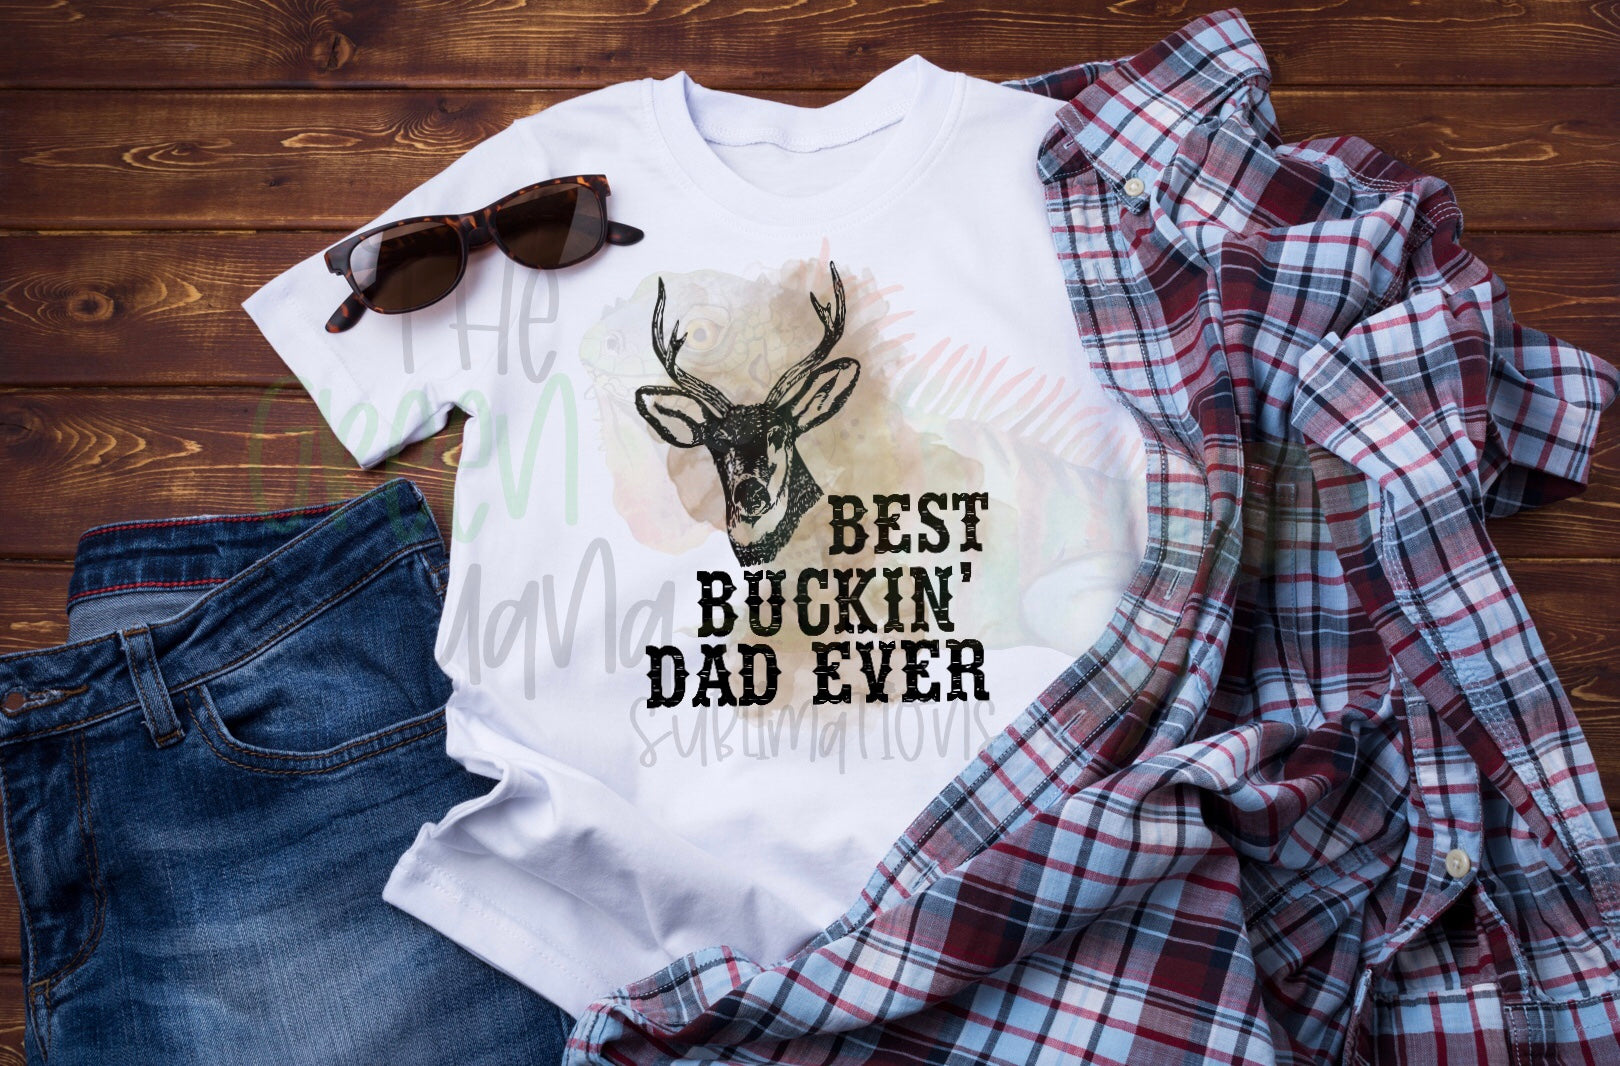 Best buckin’ dad ever